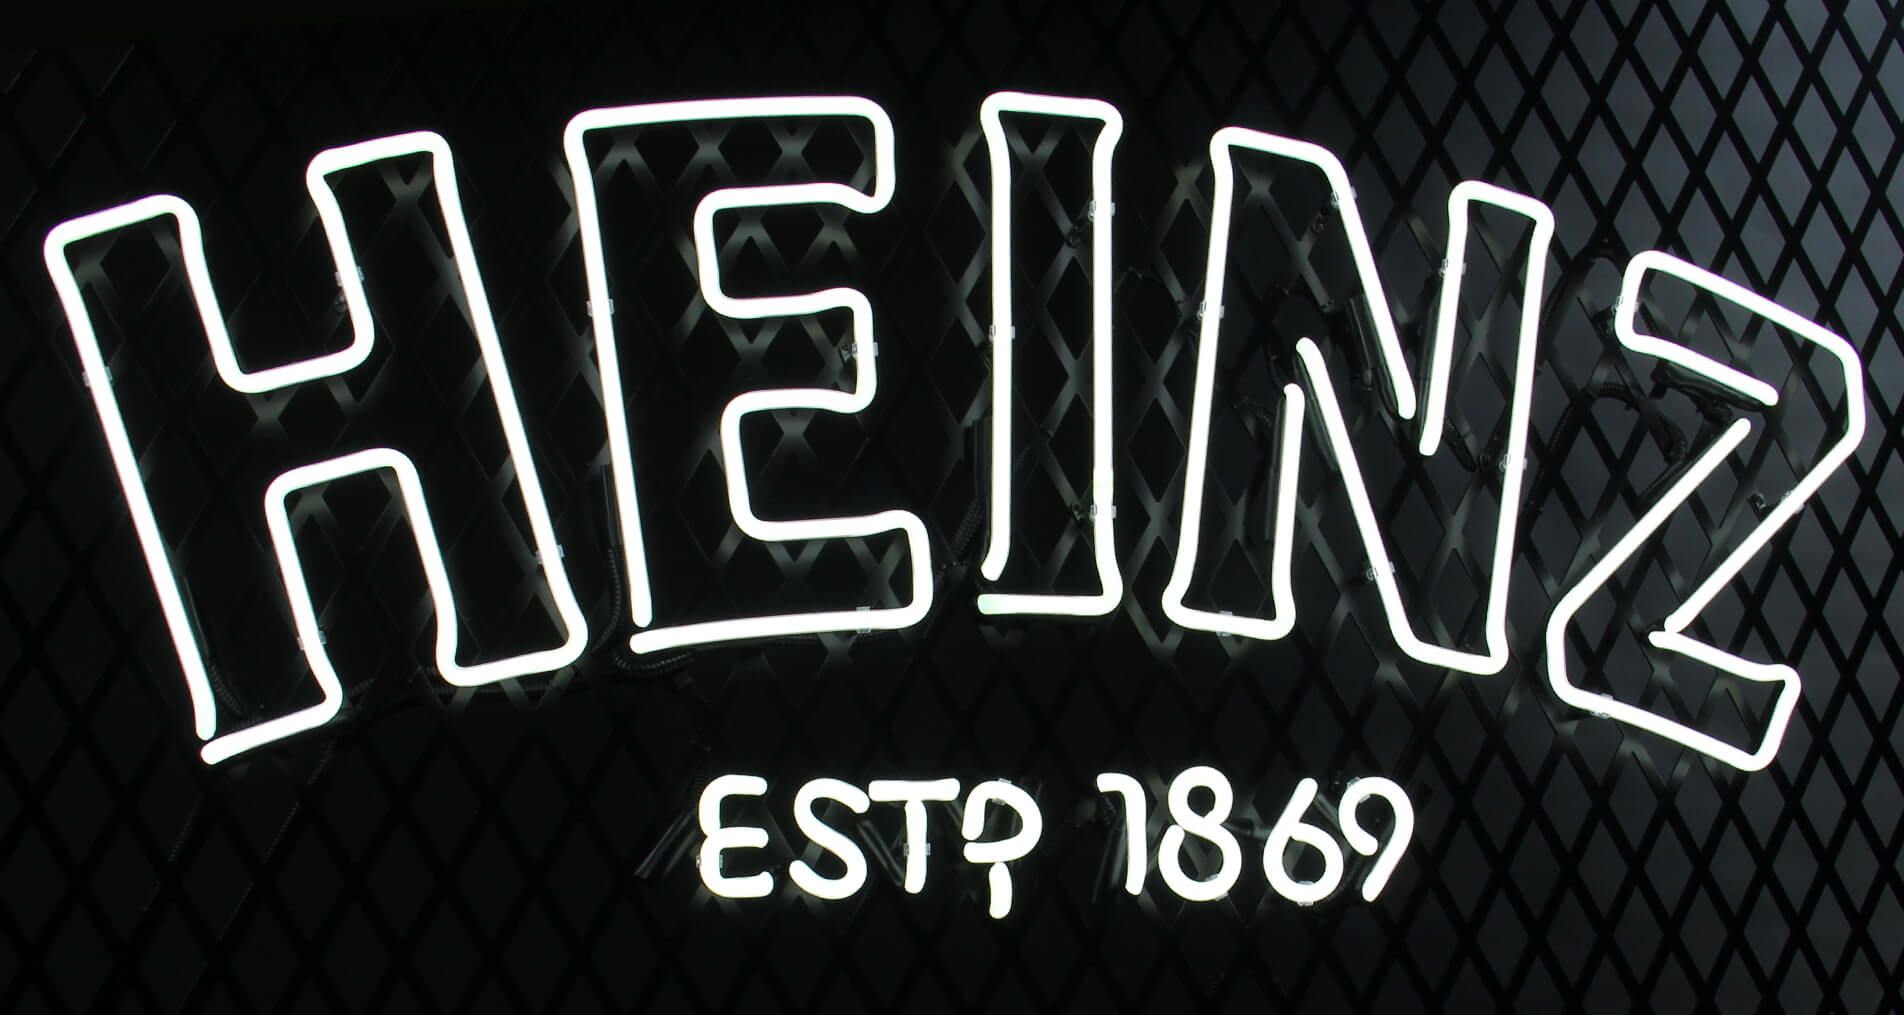 Heinz neon - Wit neon heinz 1896